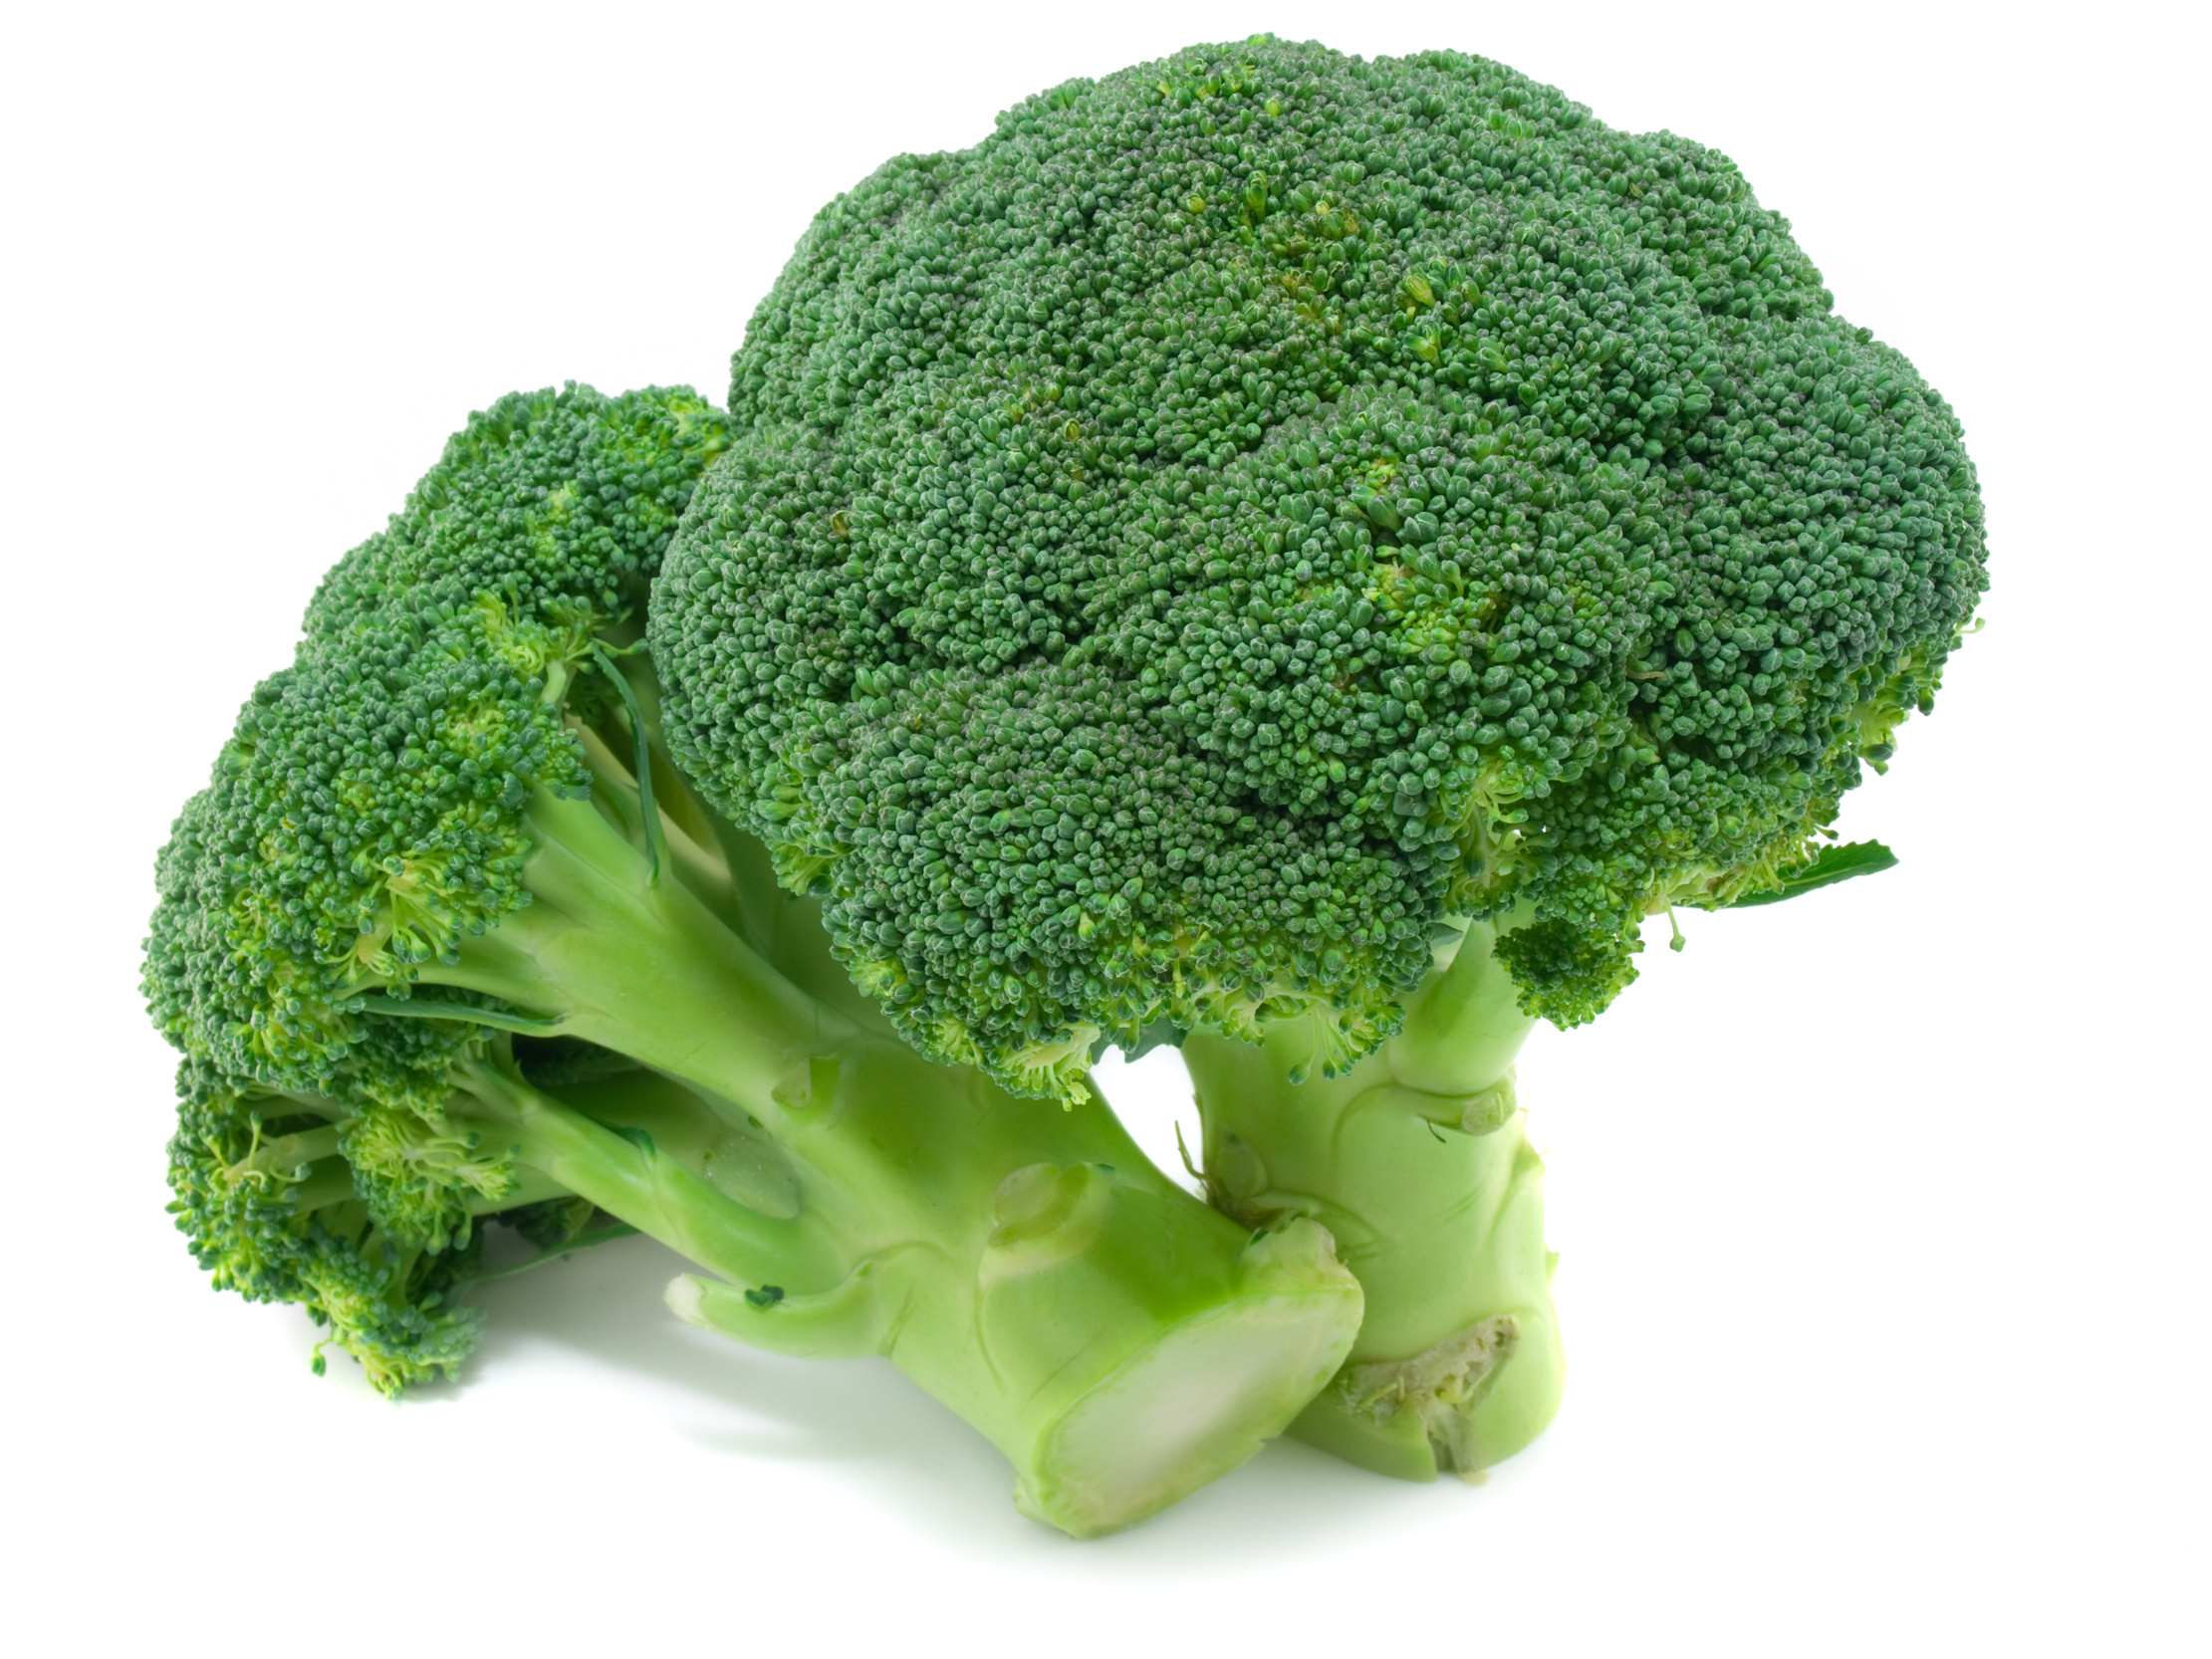 Cavolo broccolo